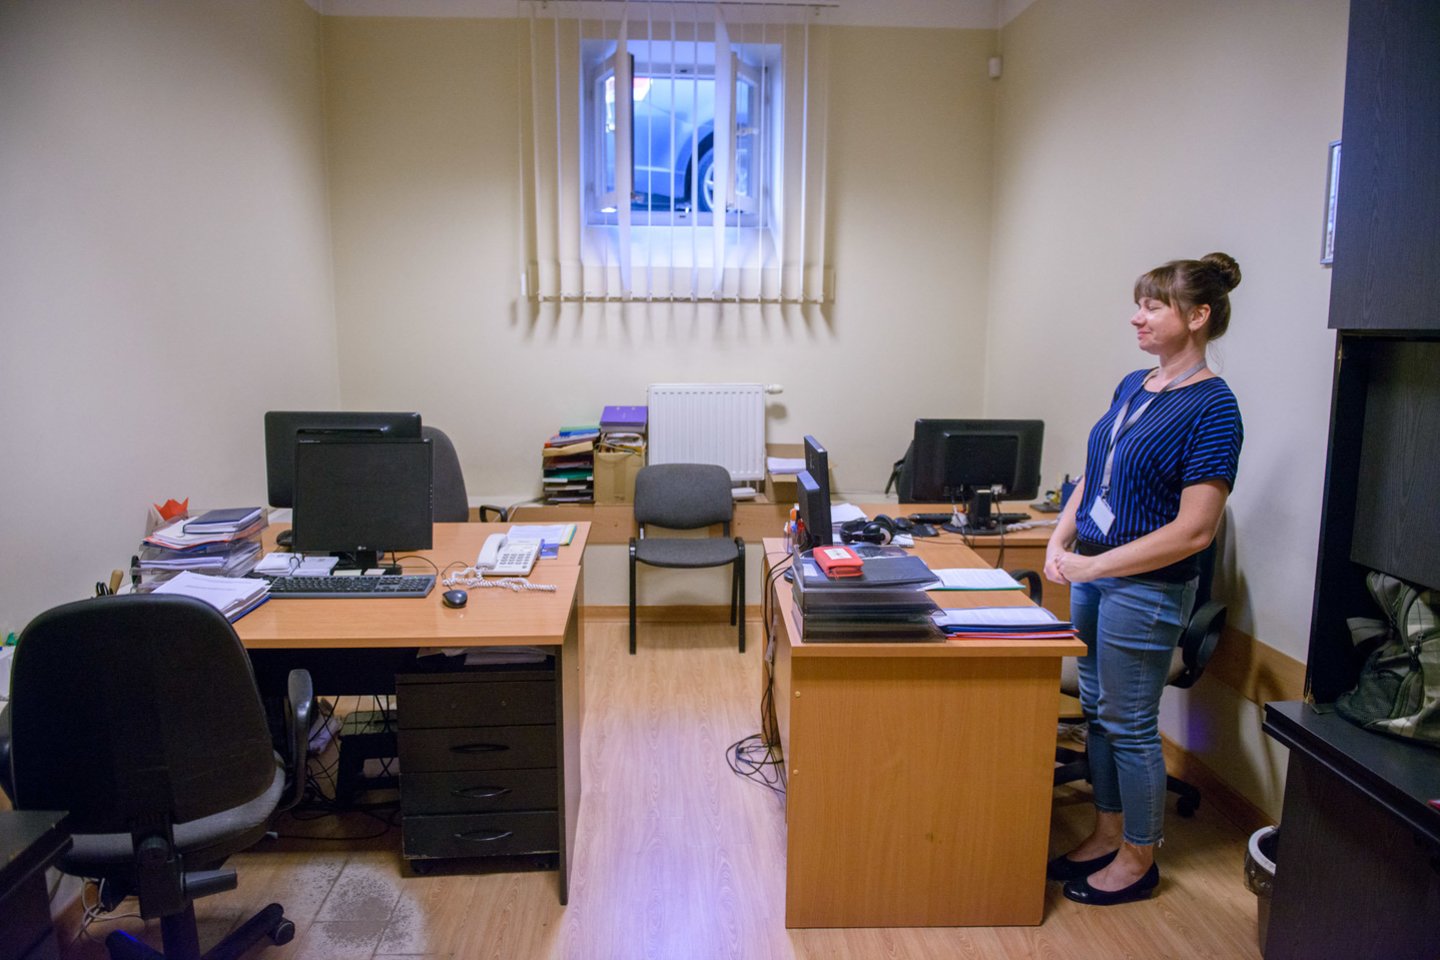 Vilniaus apygardos teismo darbuotojai šaukiasi pagalbos – dirba apgailėtinomis sąlygomis.<br> J.Stacevičiaus nuotr. 